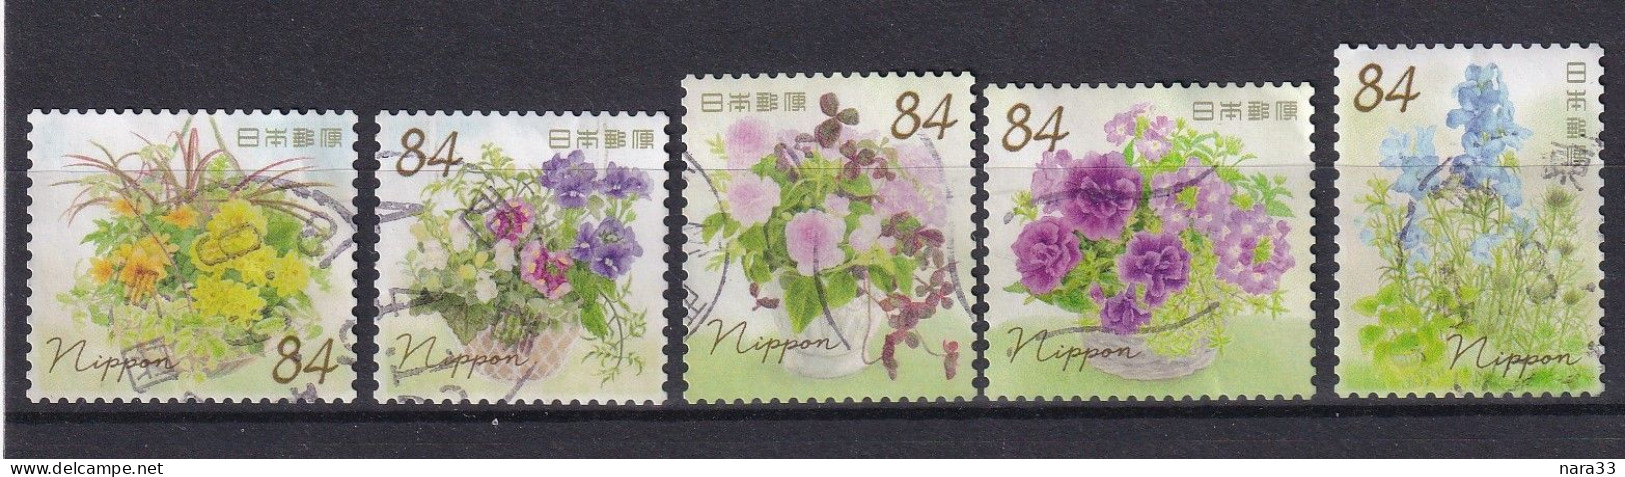 Japan - Greetings Spring 2022 - Used Stamps